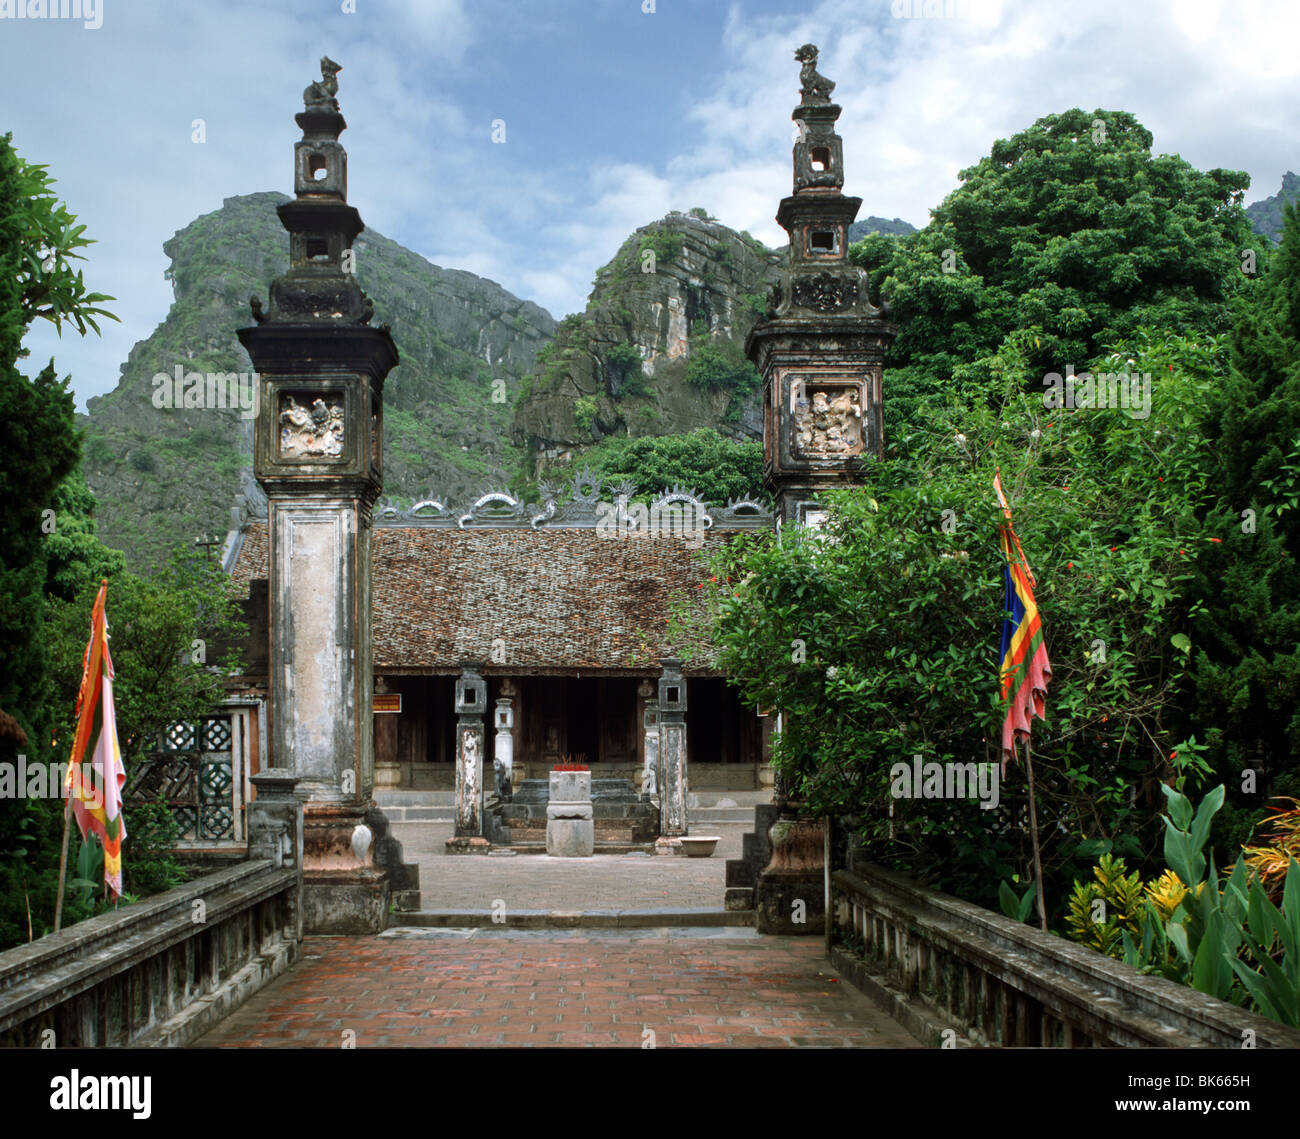 Temple Dinh, le plus ancien temple dynastique, reconstruit en 1600, Hoa Lu, le Vietnam, l'Indochine, l'Asie du Sud-Est, Asie Banque D'Images